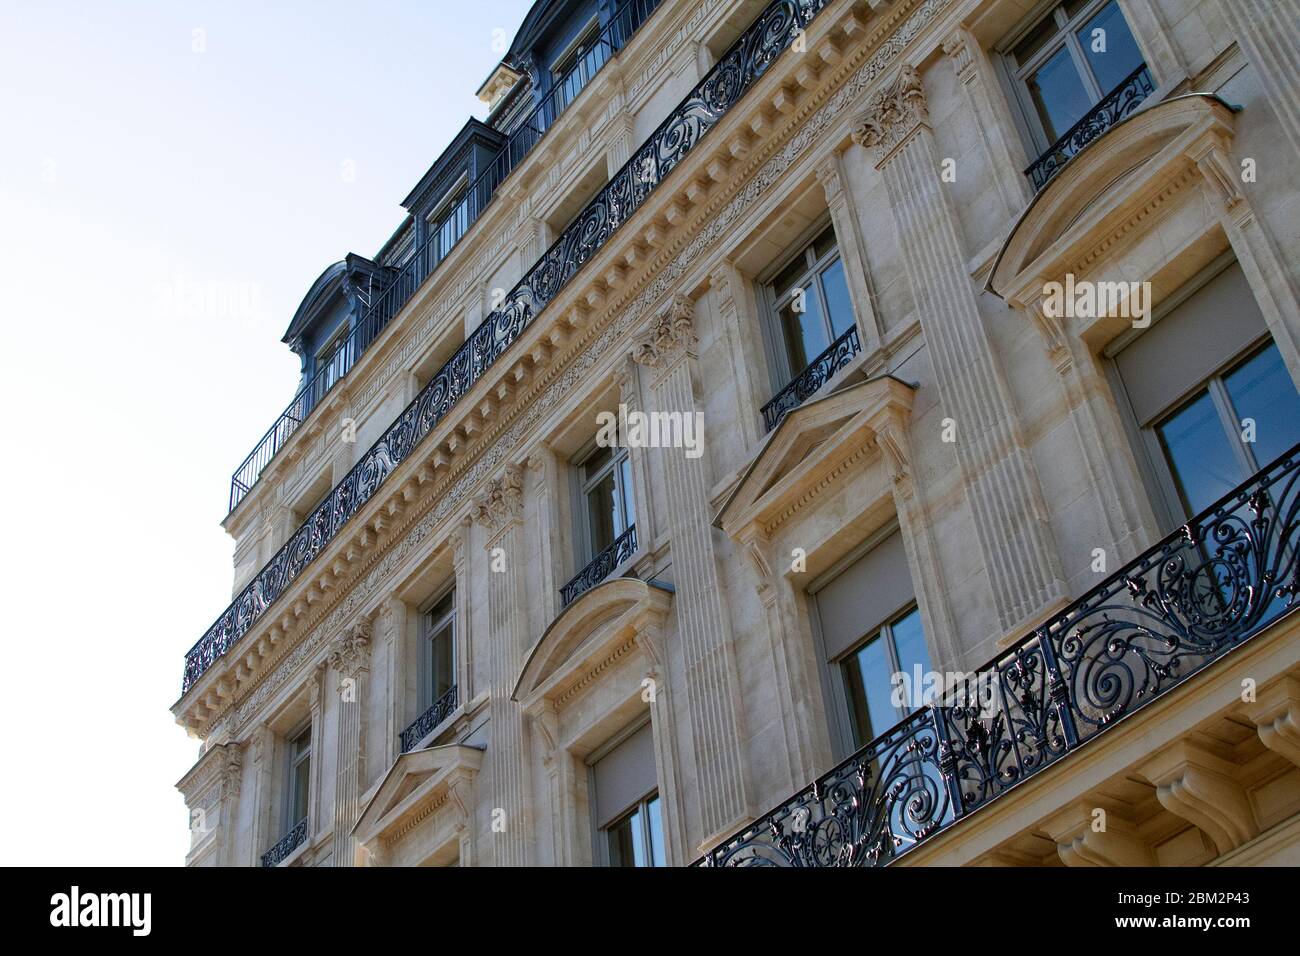 Façade de bâtiment parisien. Architecture française typique. Banque D'Images